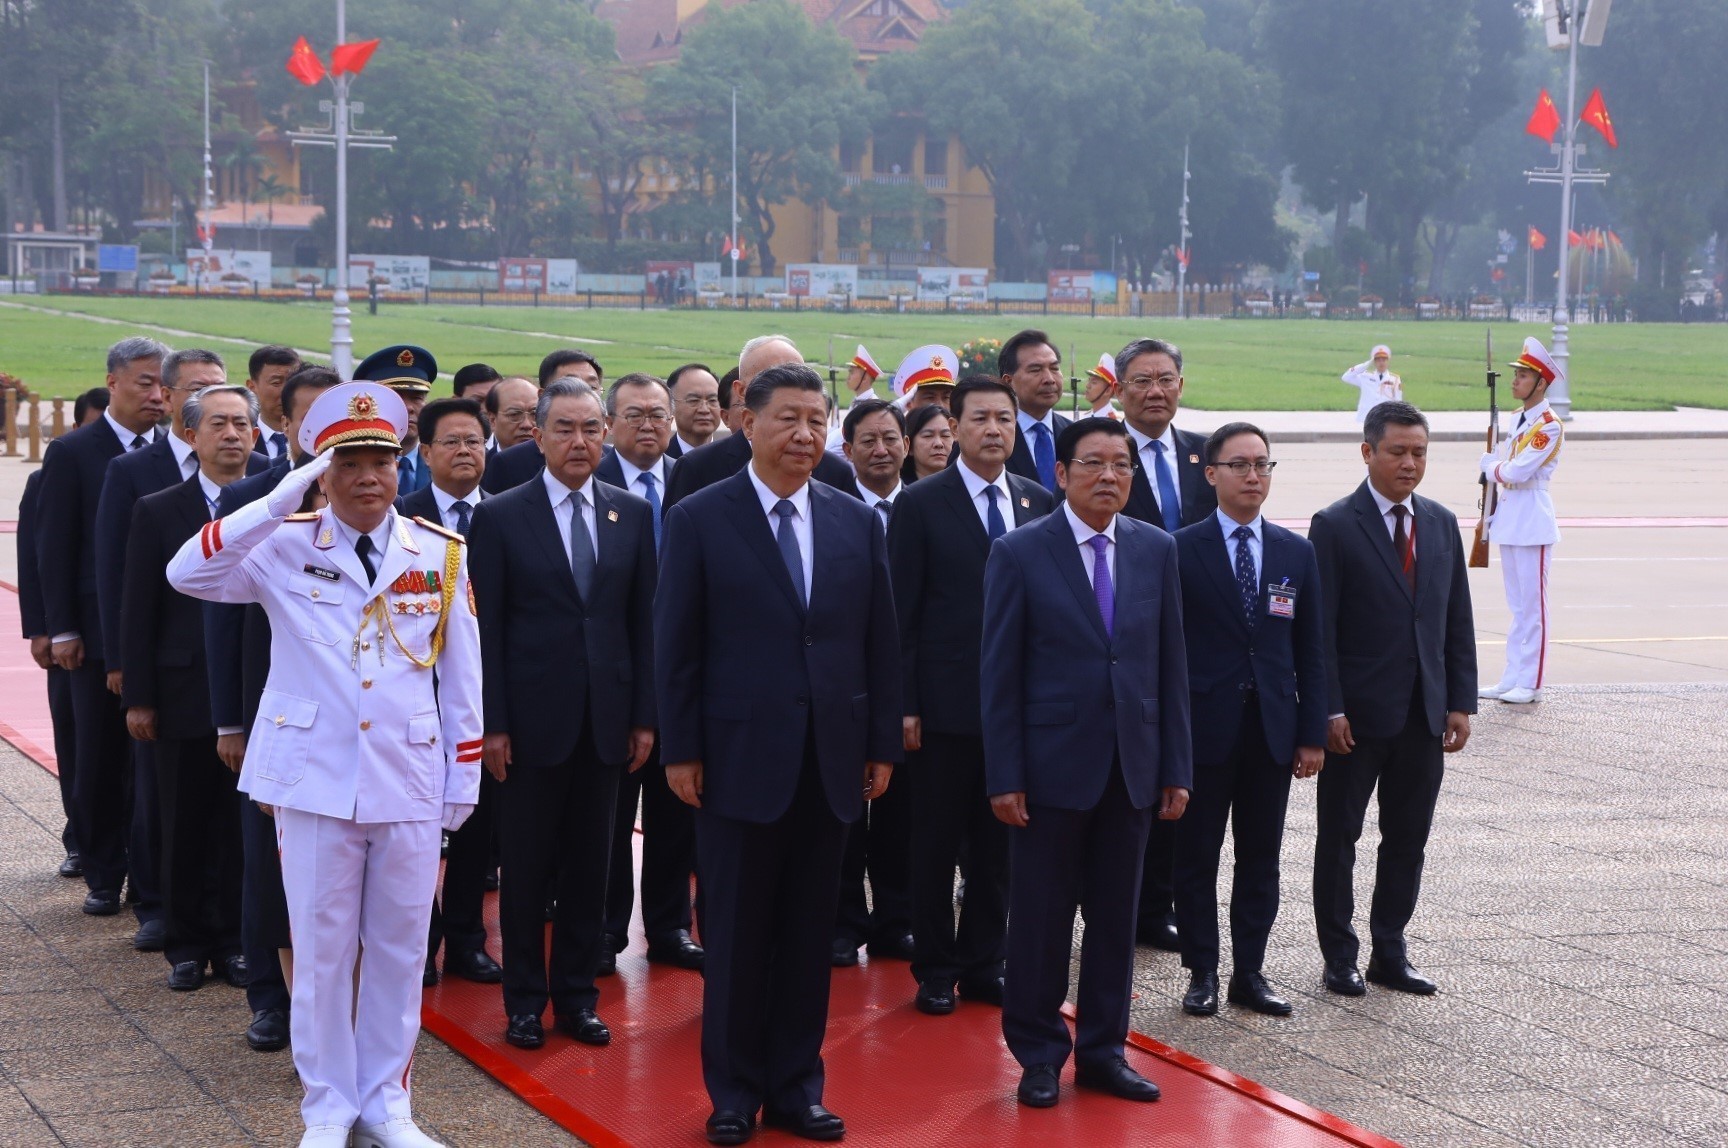 Tổng Bí thư, Chủ tịch nước Trung Quốc Tập Cận Bình vào Lăng viếng Chủ tịch Hồ Chí Minh - Ảnh 5.